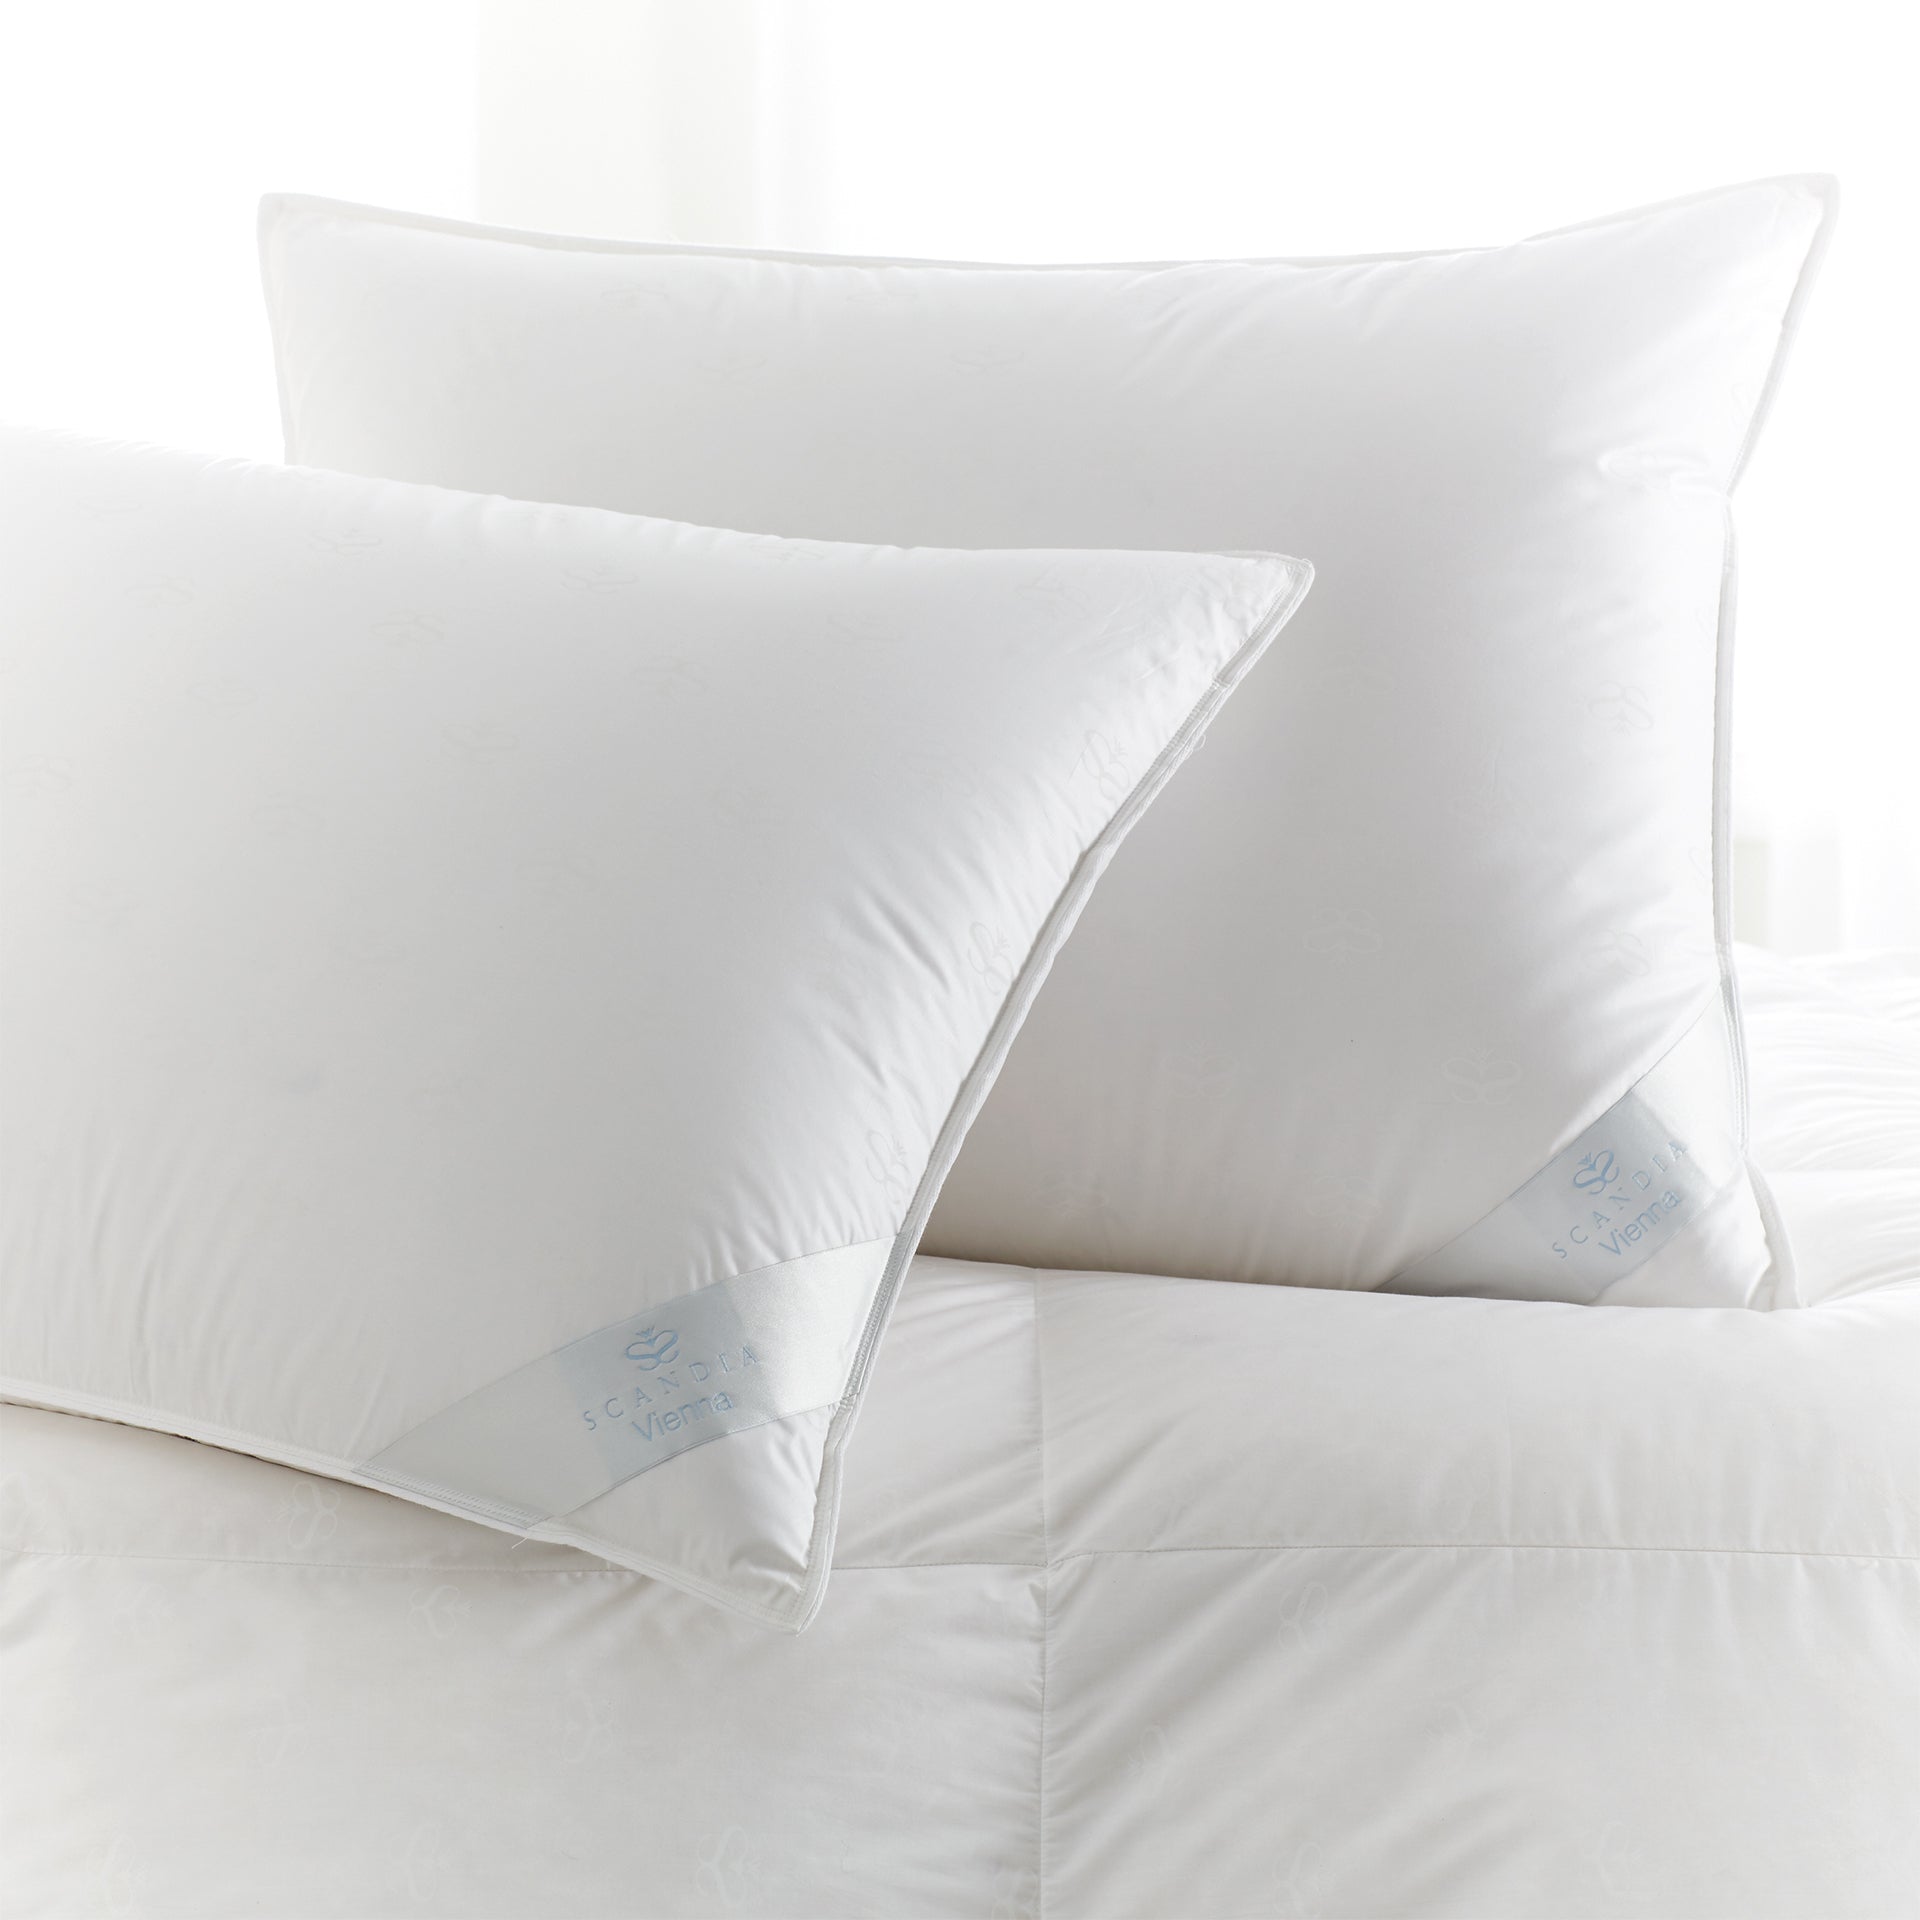 Soft White Vienna Throw Pillow-12 x 24